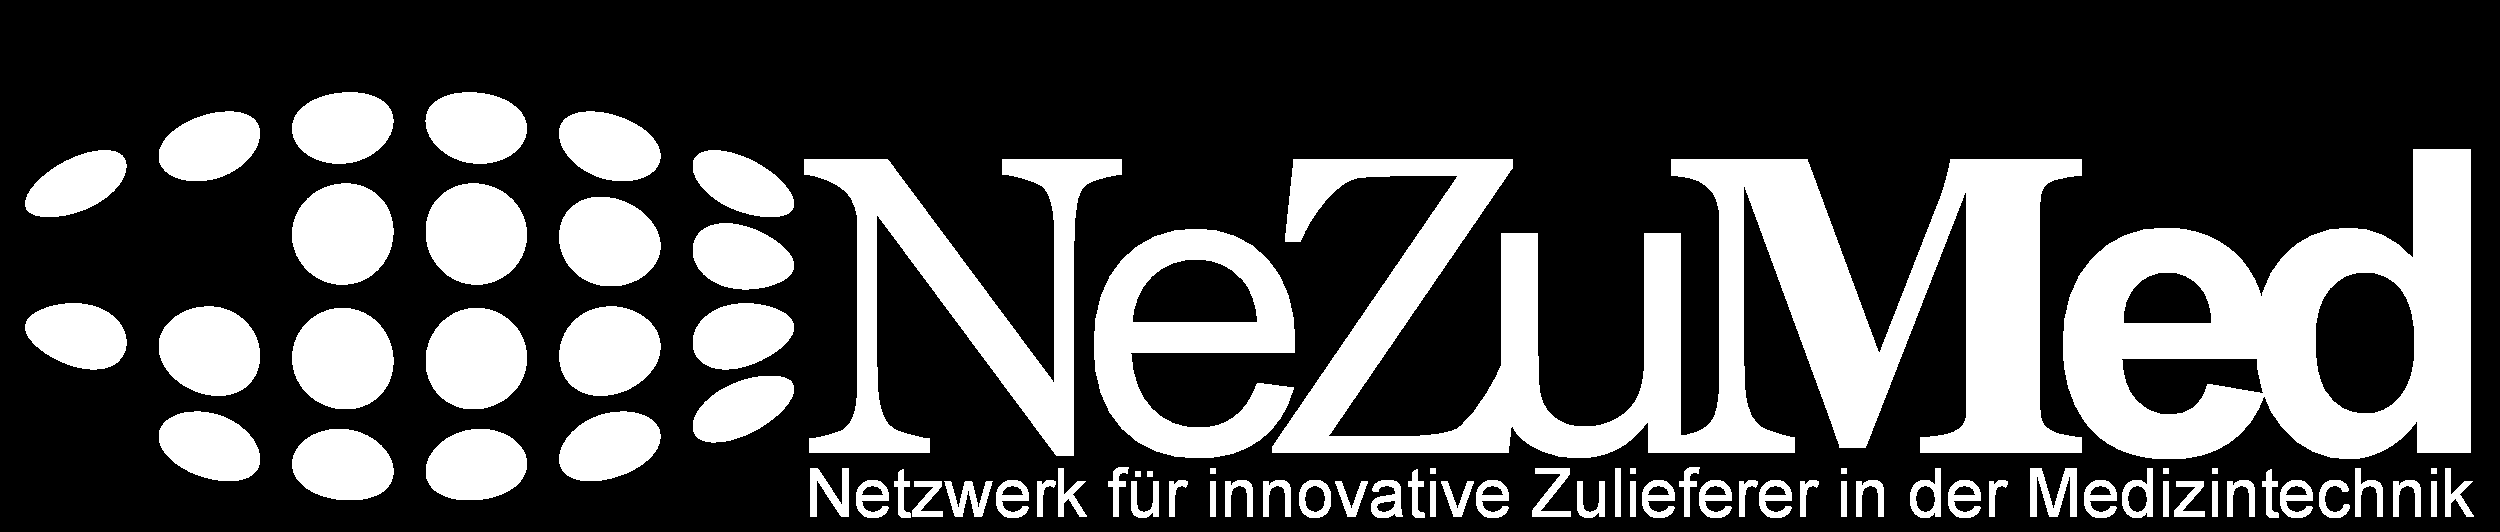 Gefördert durch: aufgrund eines Beschlusses des Deutschen Bundestages Unterstützt durch: Netzwerkmanagement: NeZuMed Fachtagung Innovationen in der